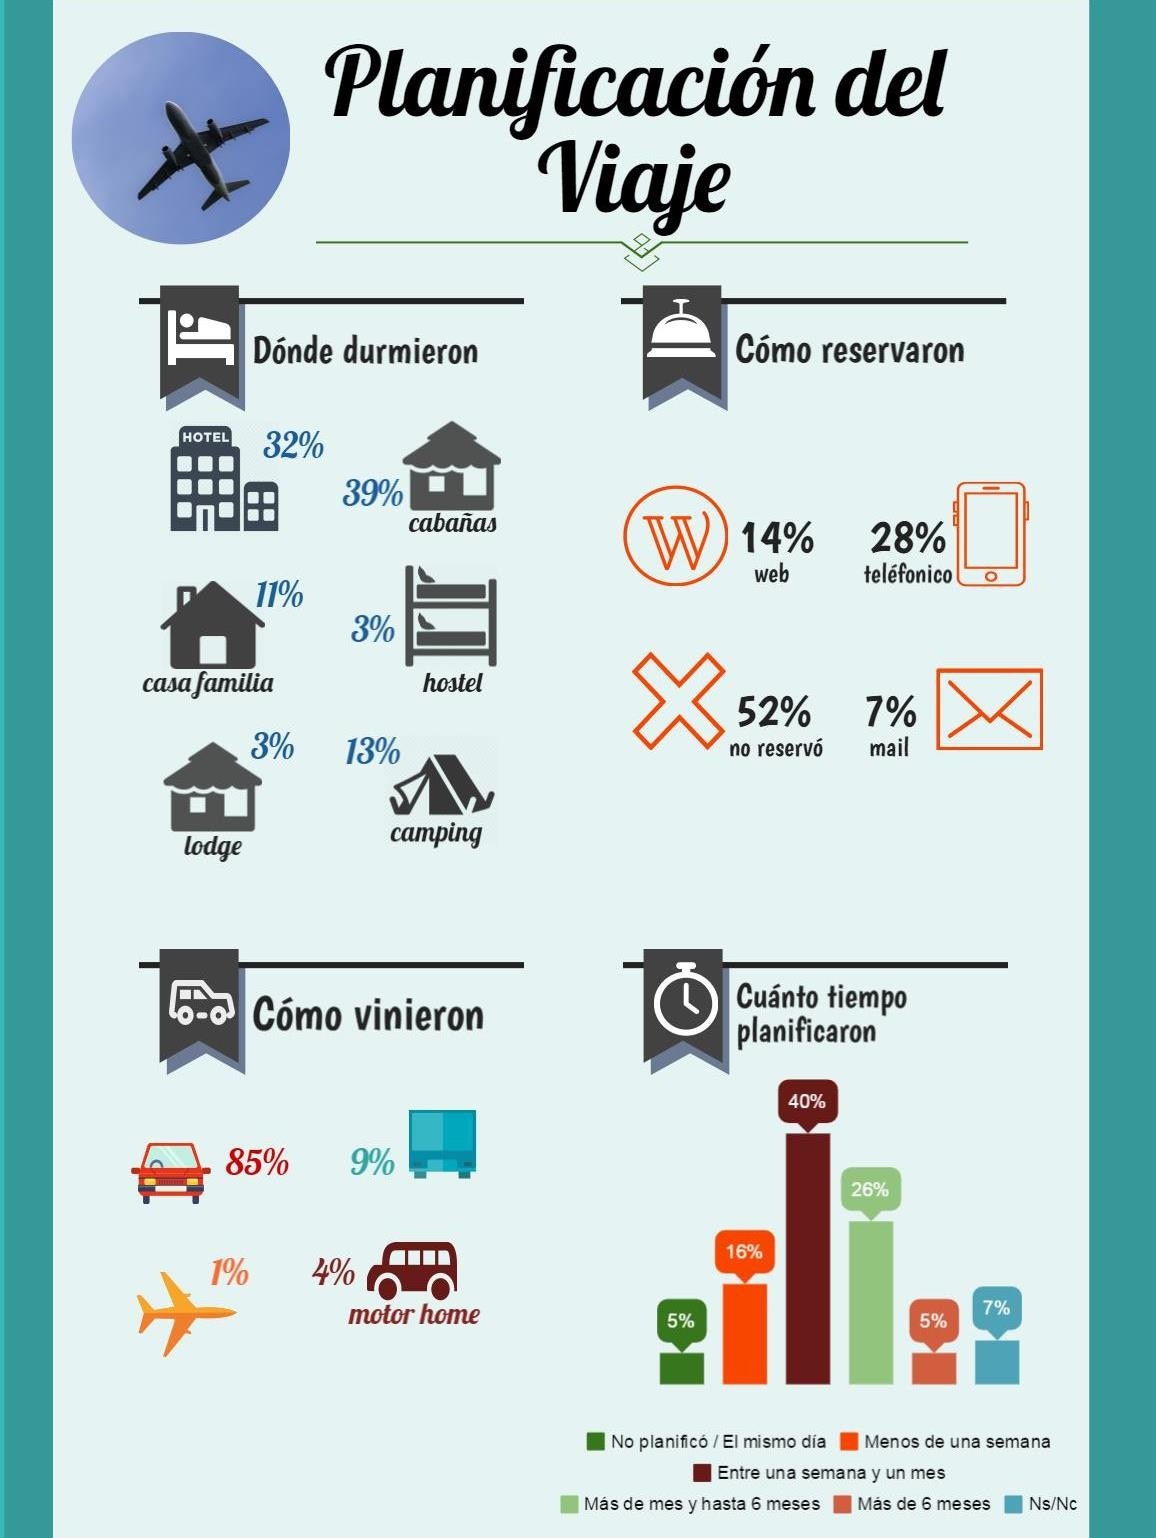 El 32% de los visitantes opta por alojarse en establecimientos hoteleros, un 42% en cabañas/lodges, el 3% en hostel, el 11% en casa de familias (alojamiento no pago) mientras que un 13% prefiere